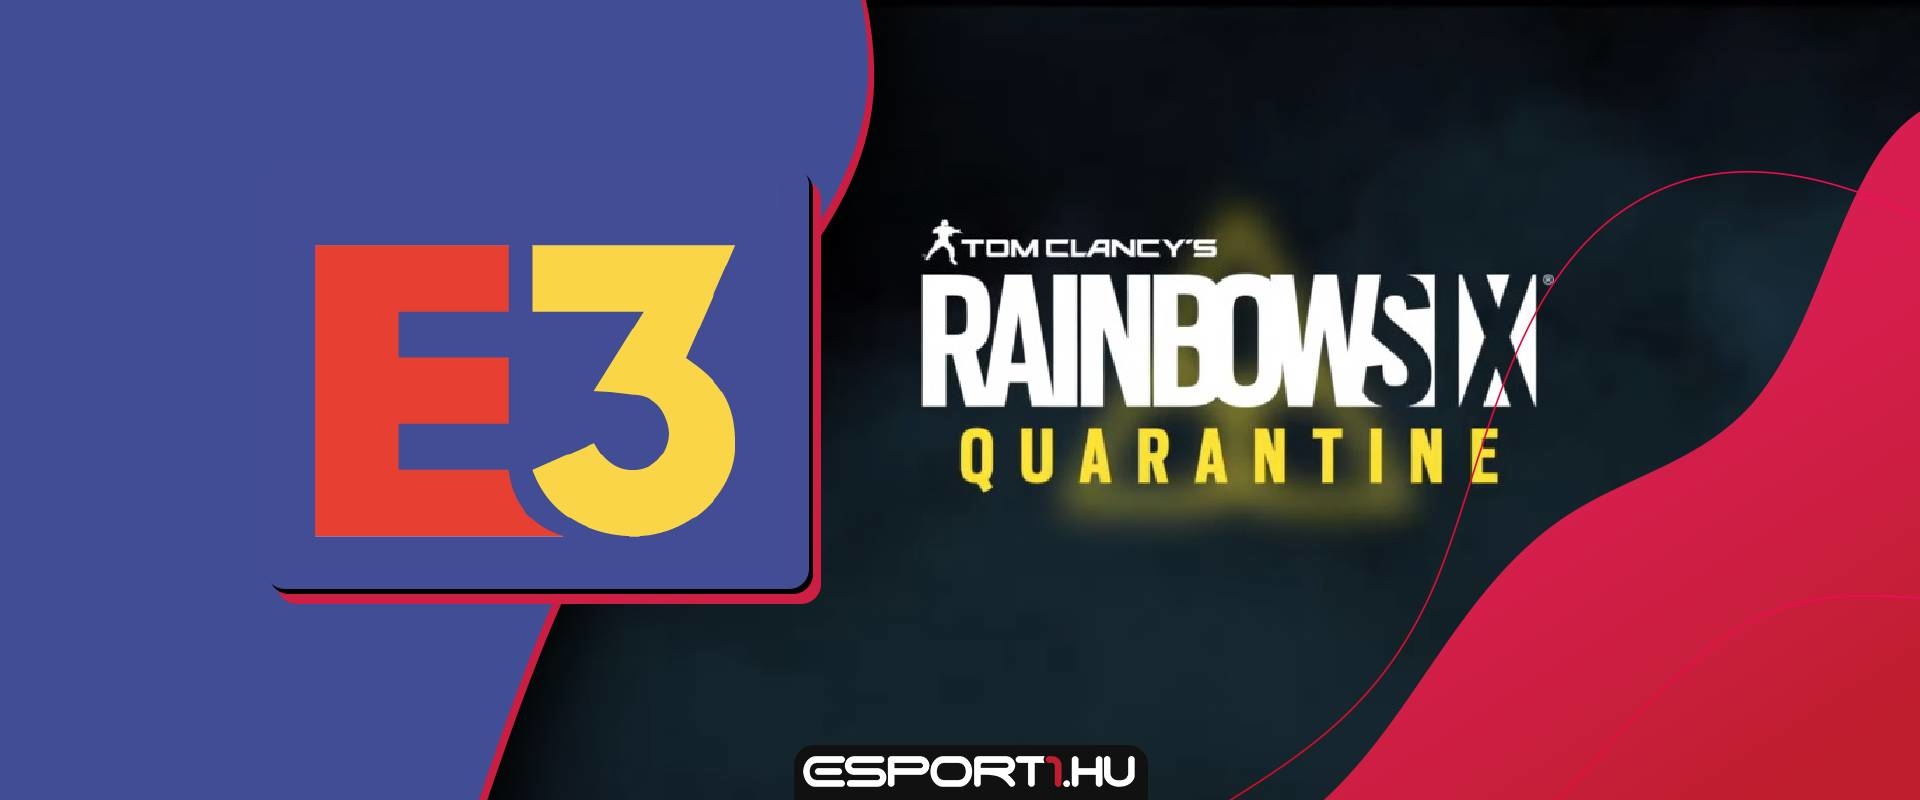 Rainbow Six Quarantine - Bemutatták a Rainbow Six széria legújabb darabját!